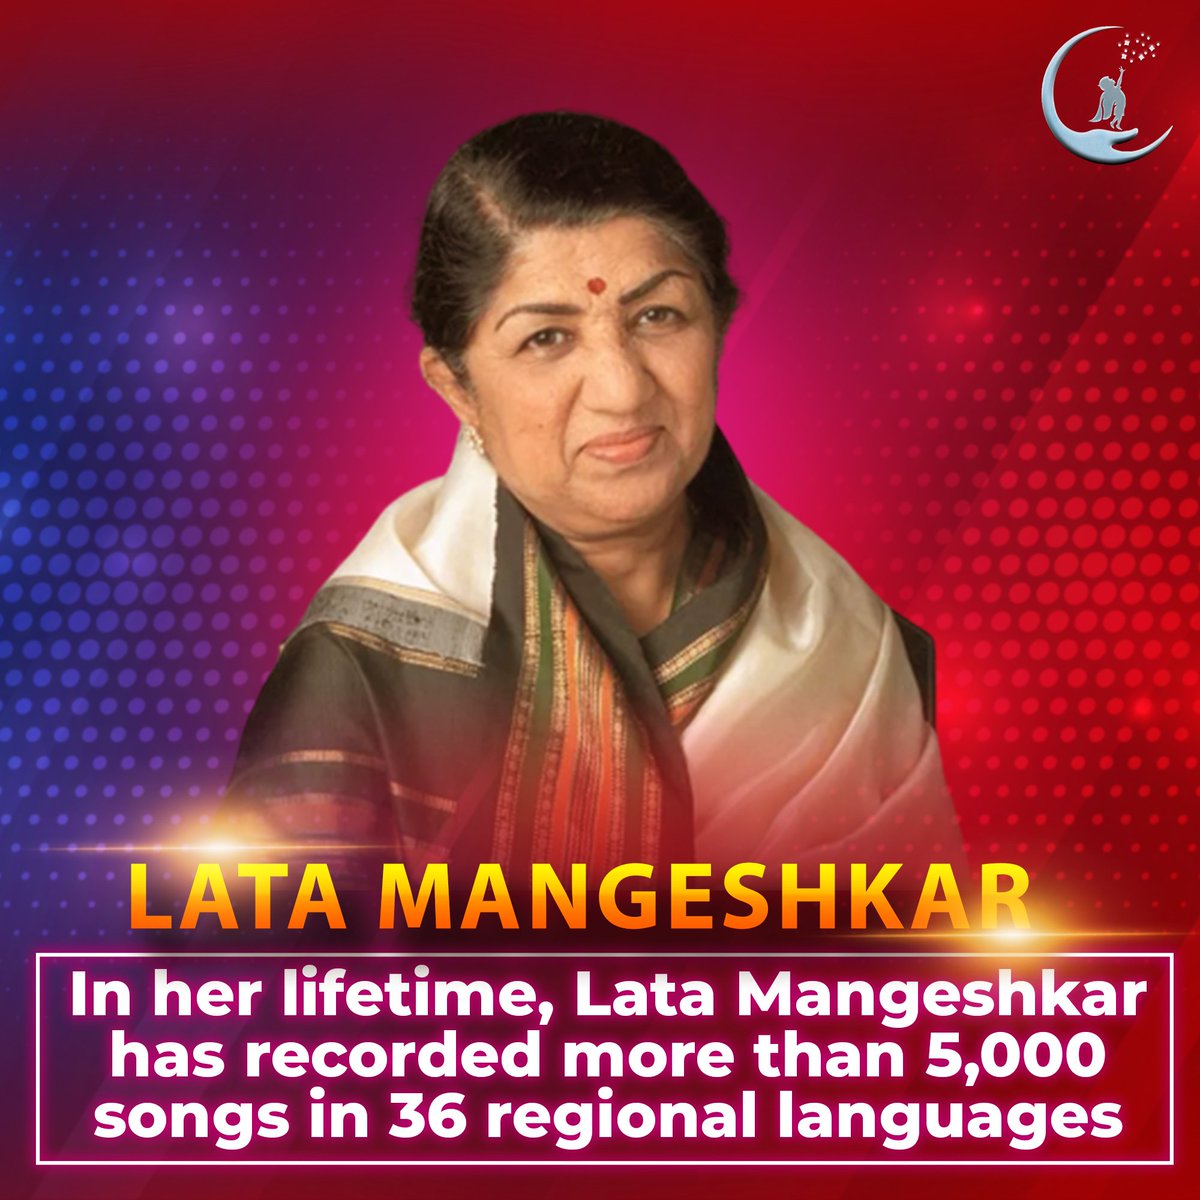 Do You know ?

'Lata Mangeshkar has recorded more than 5,000 songs' 

#latamangeshkar #bollywood #kishorekumar #ashabhosle #bollywoodsongs #music #oldisgold #oldsongs #uditnarayan #kumarsanu #oldbollywood #hindisongs #india #retrobollywood #oldsong #sonunigam #oldhindisongs